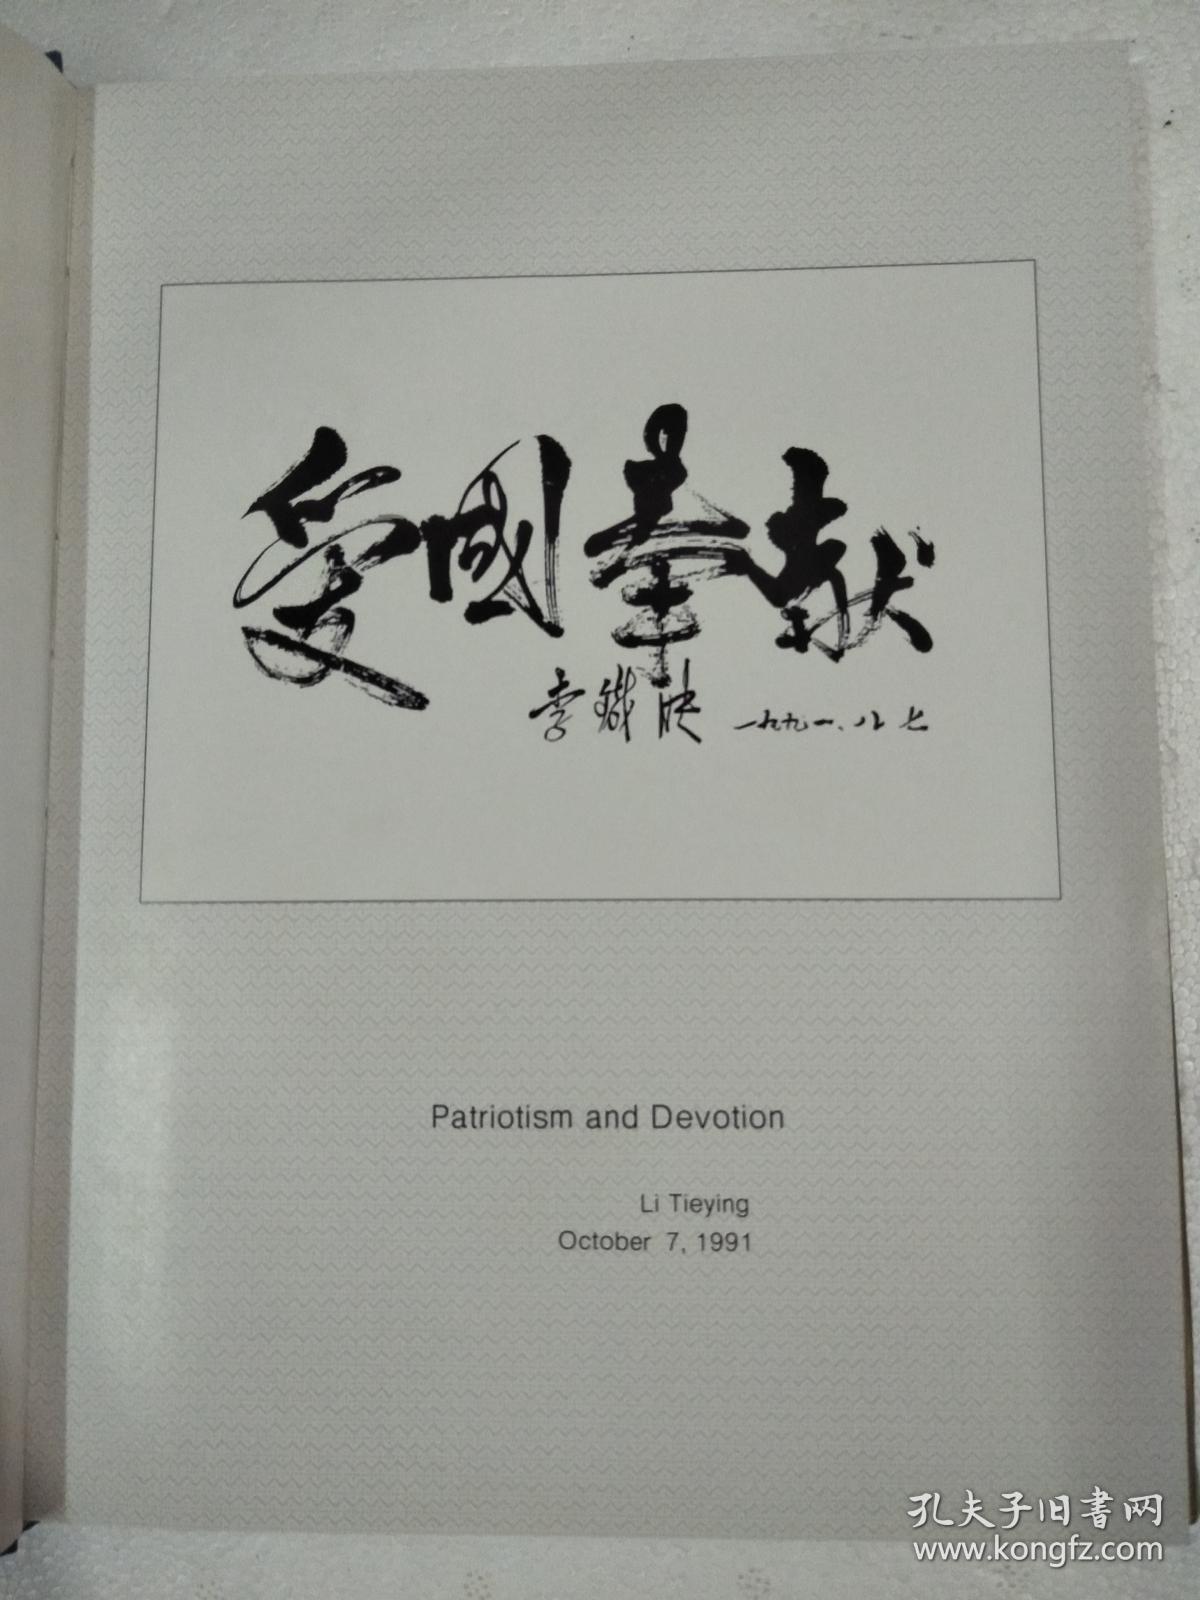 中国1990年人口普查    精装  铜版纸彩印   大16开   160页    一版一印   印4000本